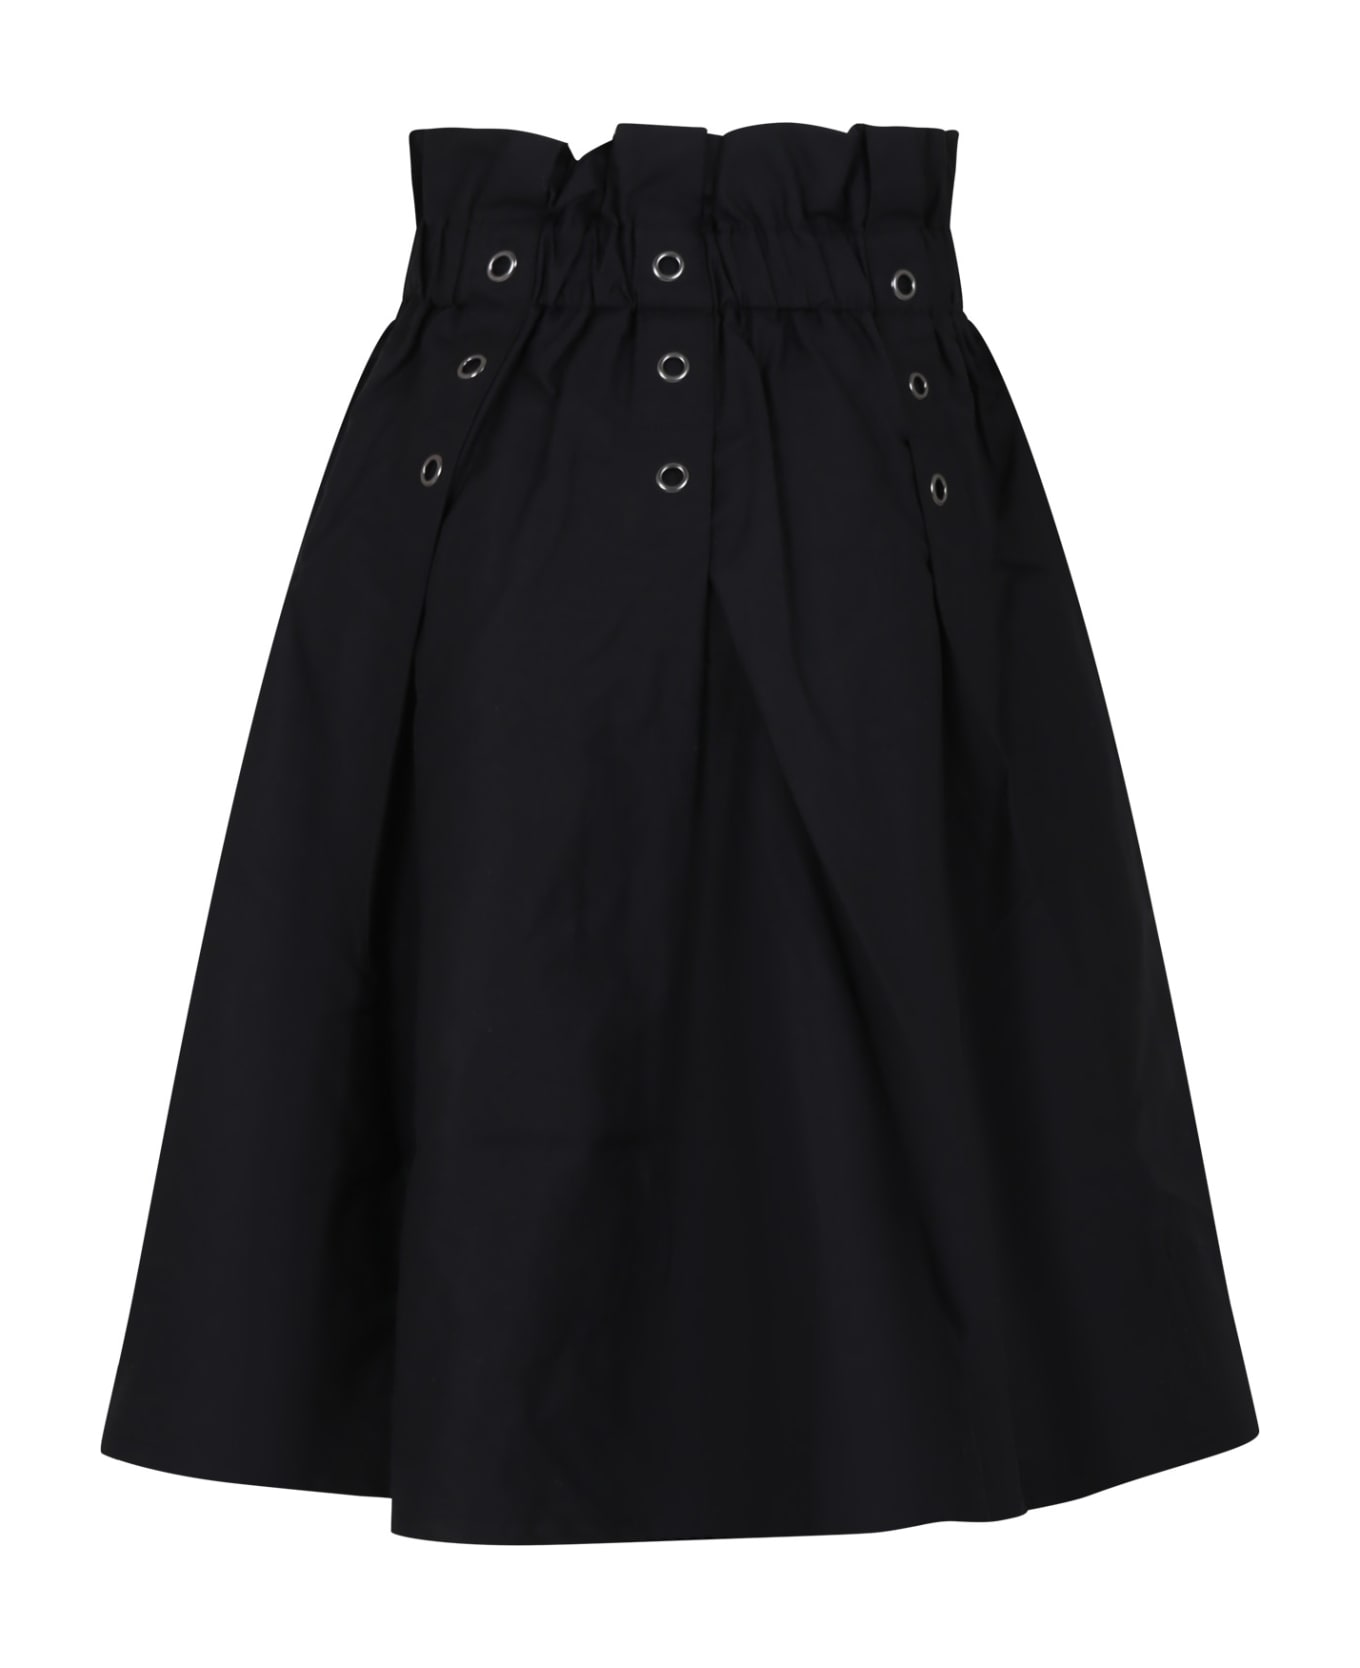 DKNY Black Casual Skirt For Girl - Black ボトムス